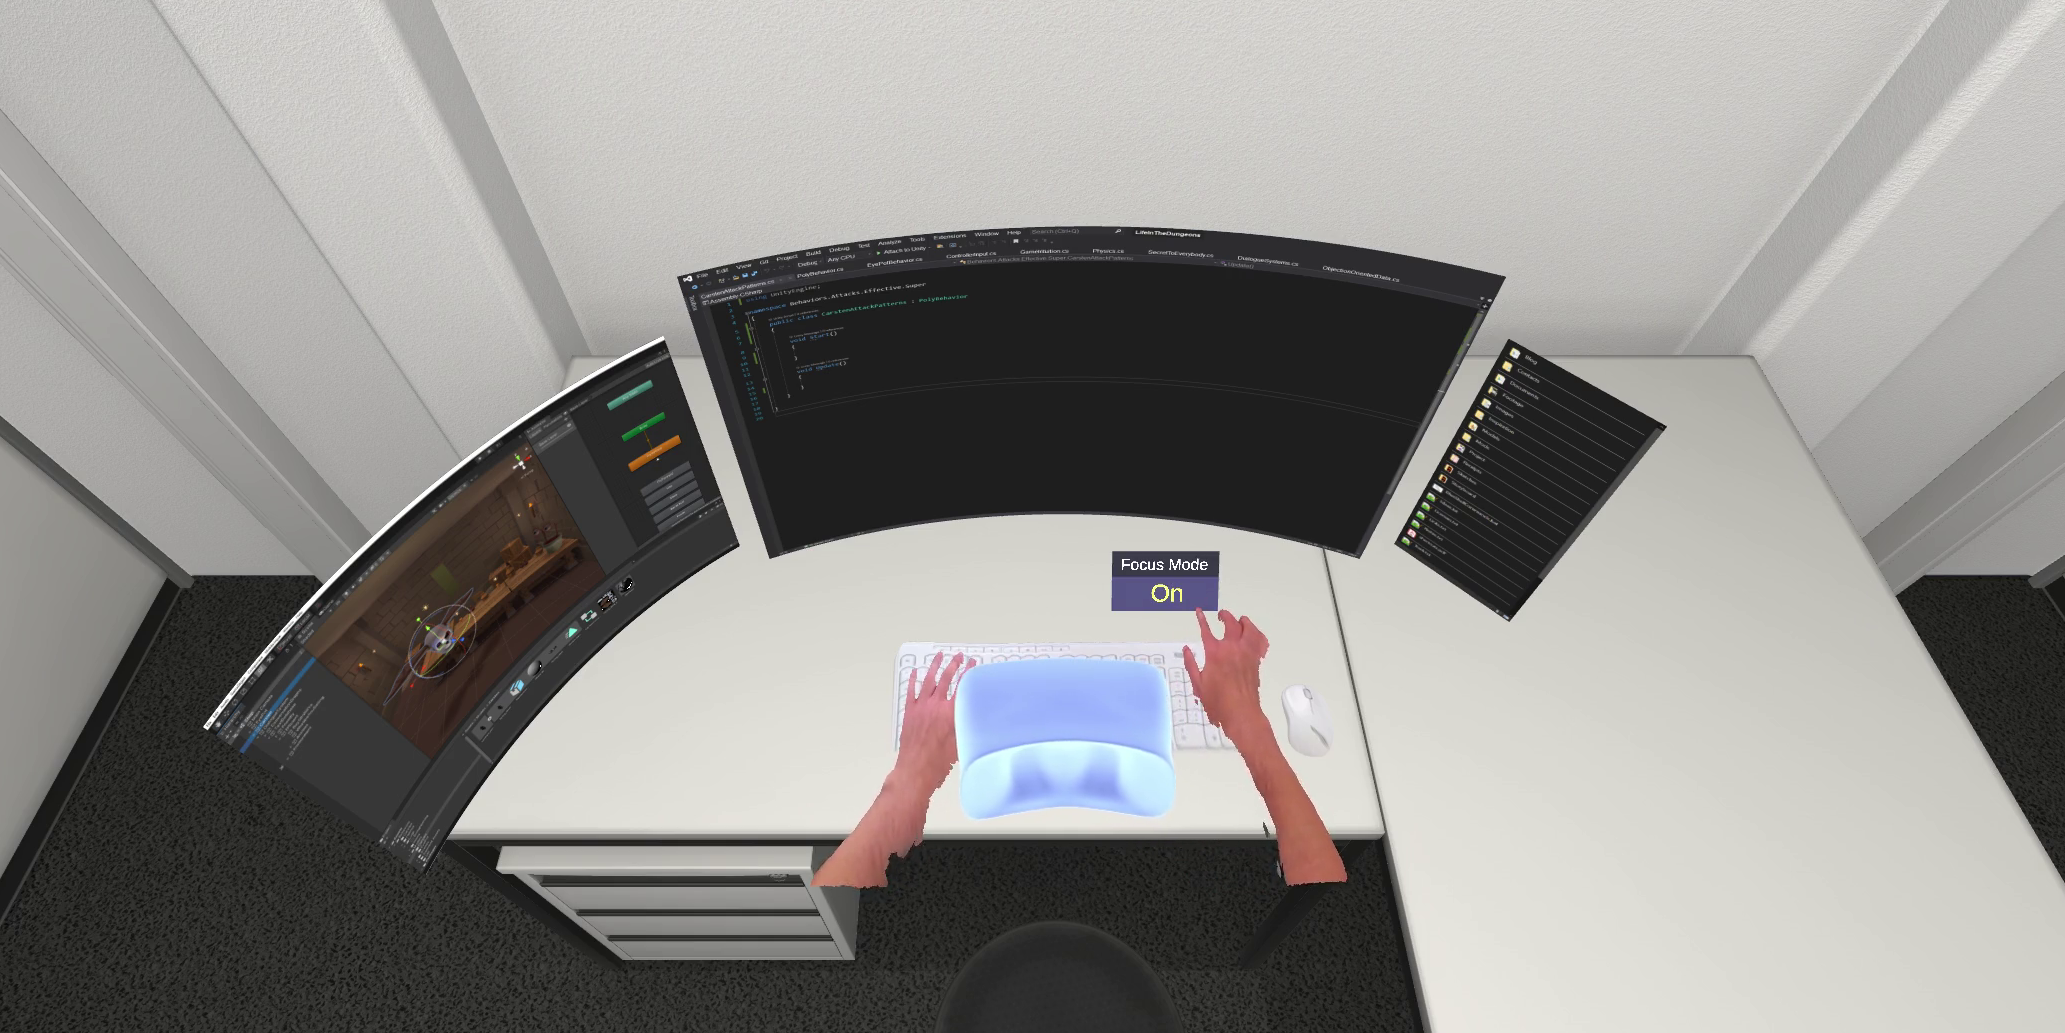 Virtuelle Schreibtischumgebung mit zwei gekrümmten Bildschirmen